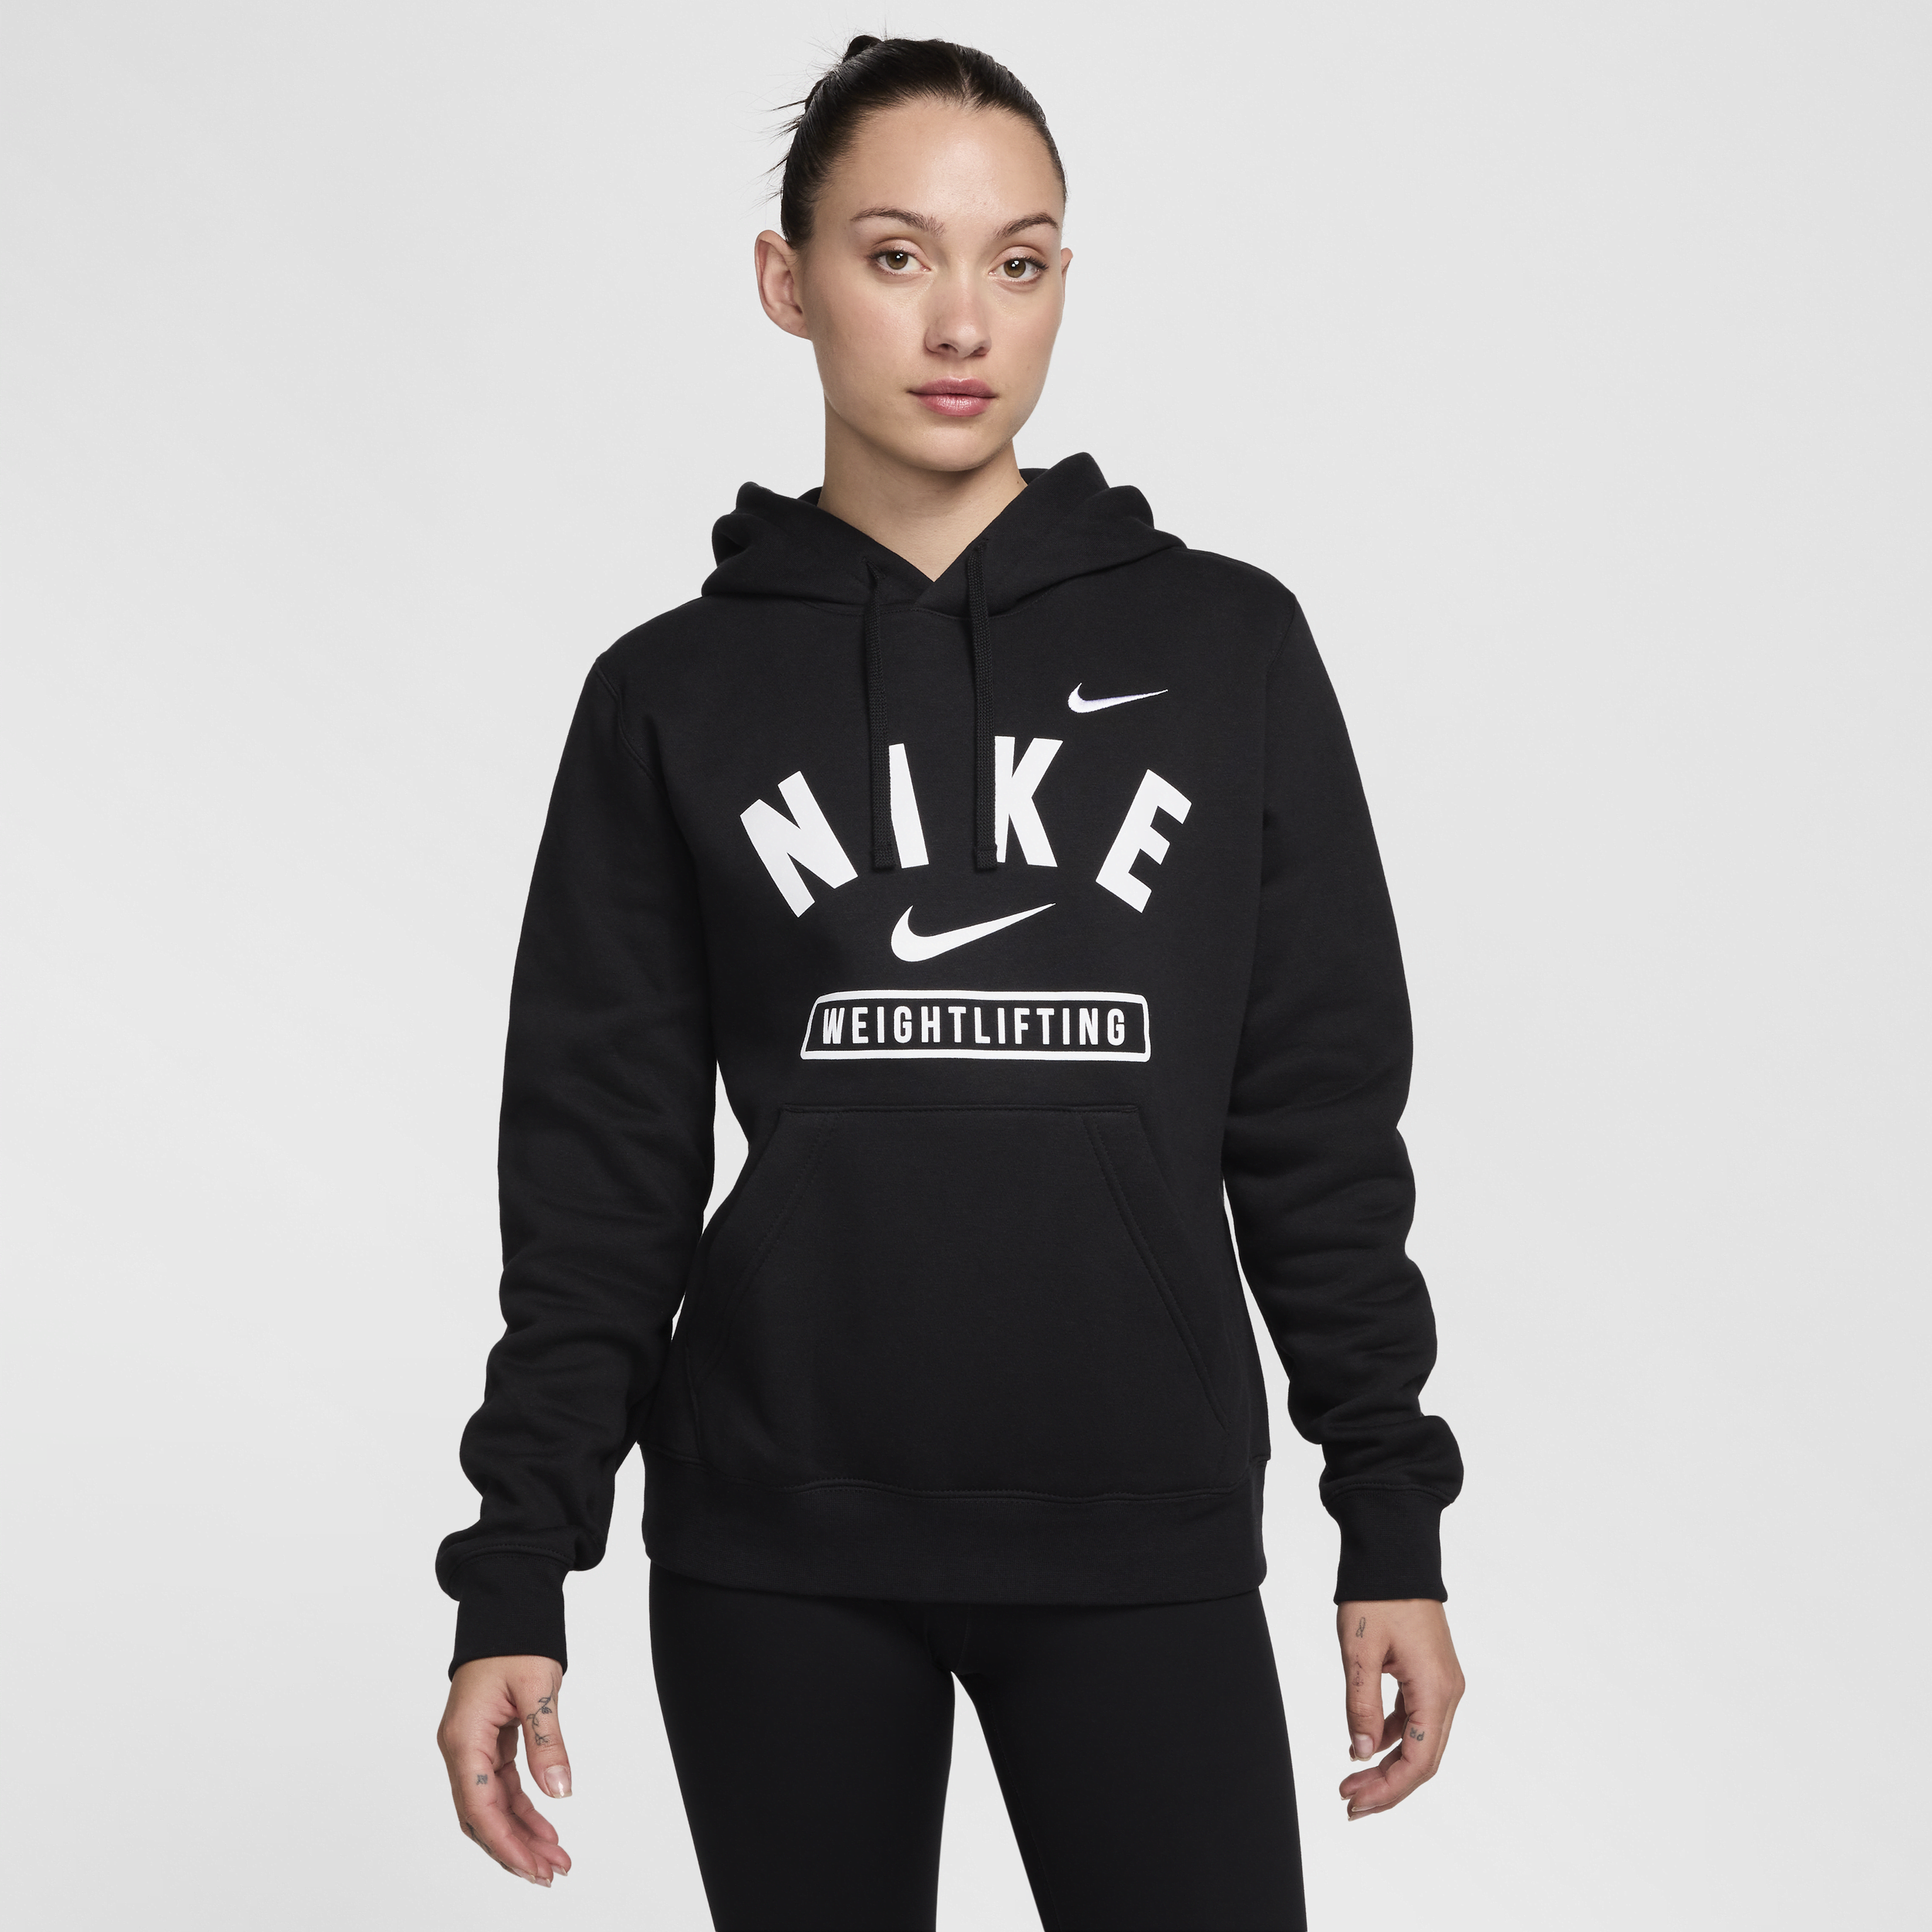 Nike Women's Weightlifting Pullover Hoodie In Black